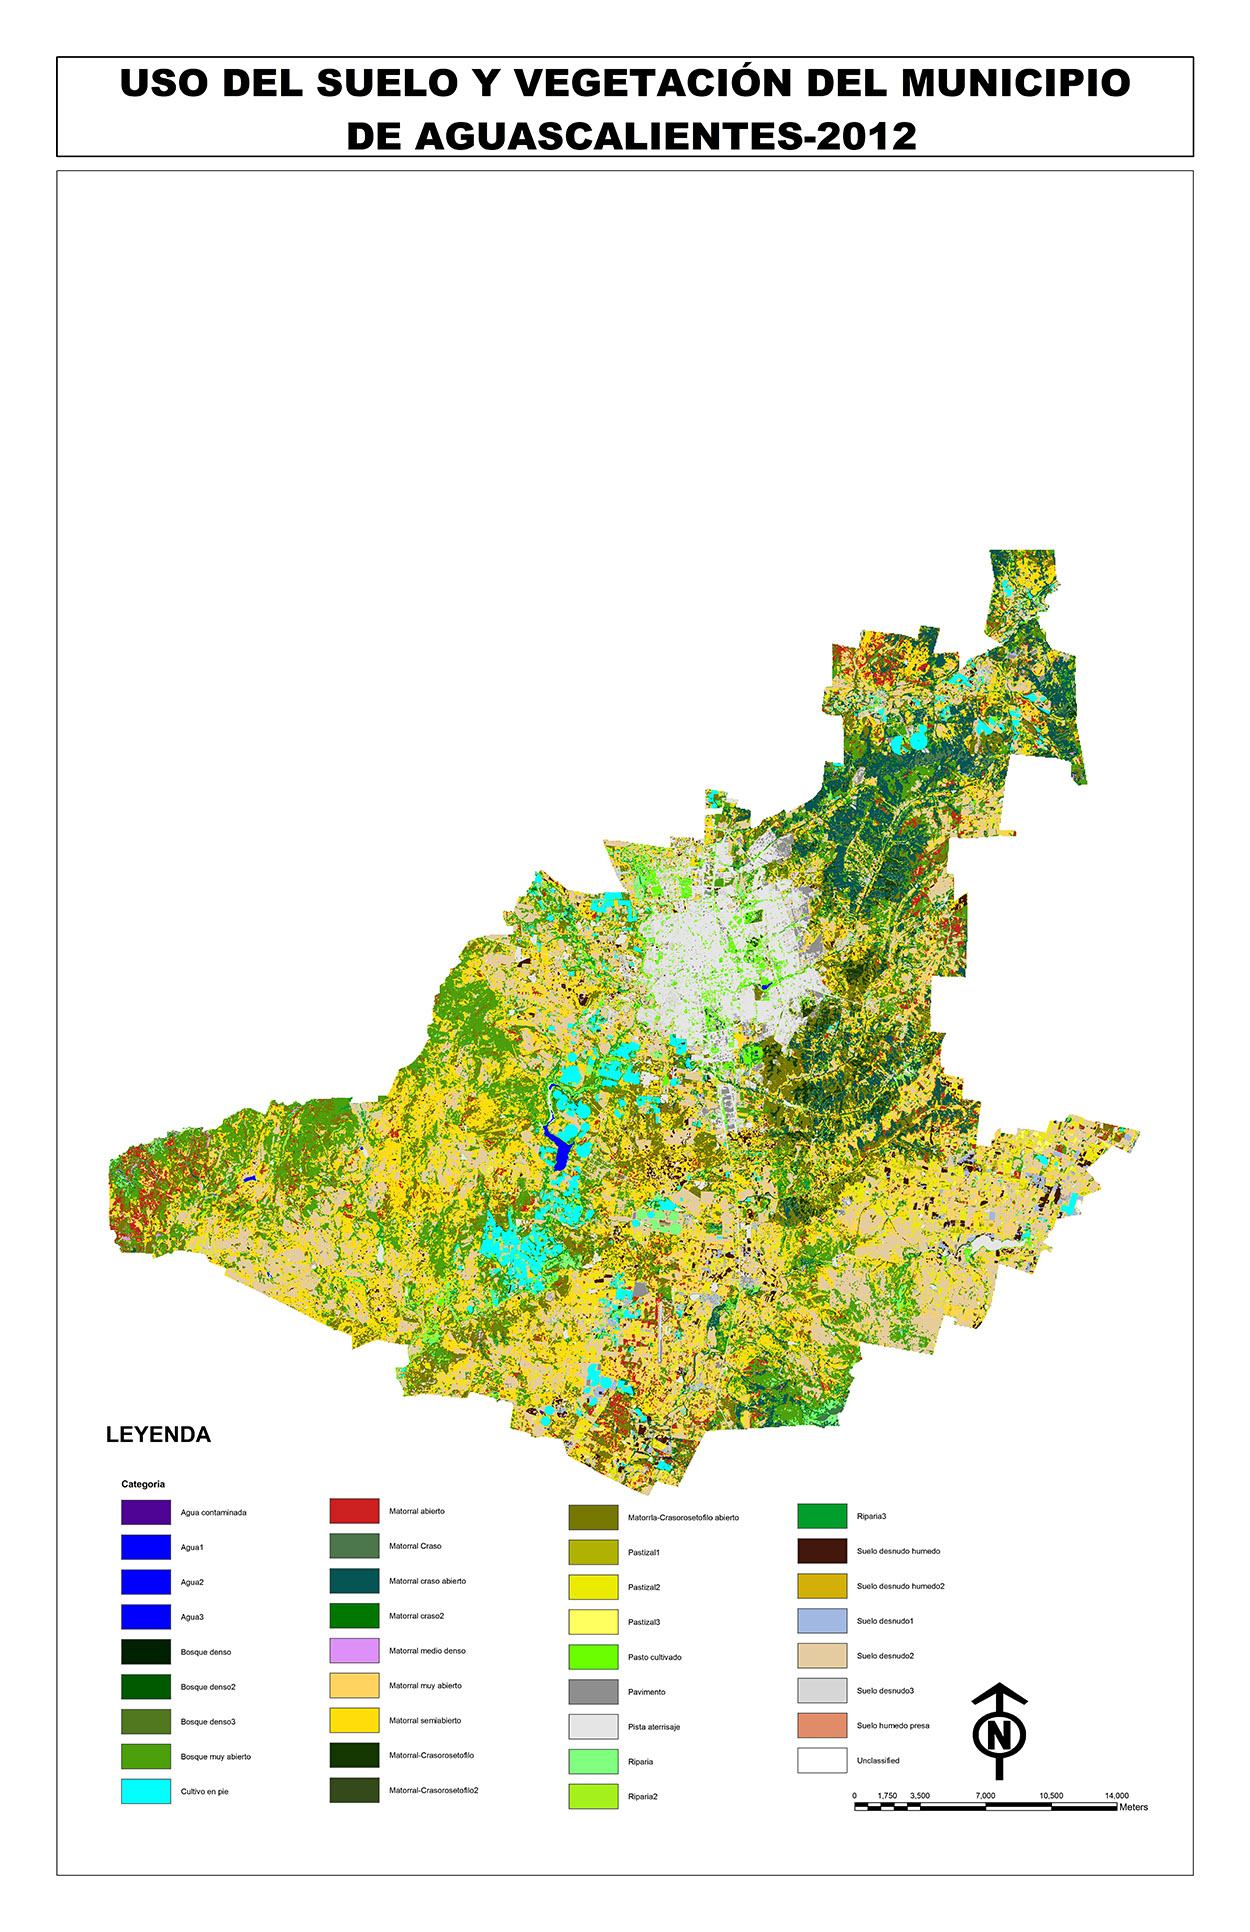 Figura 2. Imagen que muestra las áreas verdes detectadas dentro de la ciudad de Aguascalientes y su ámbito